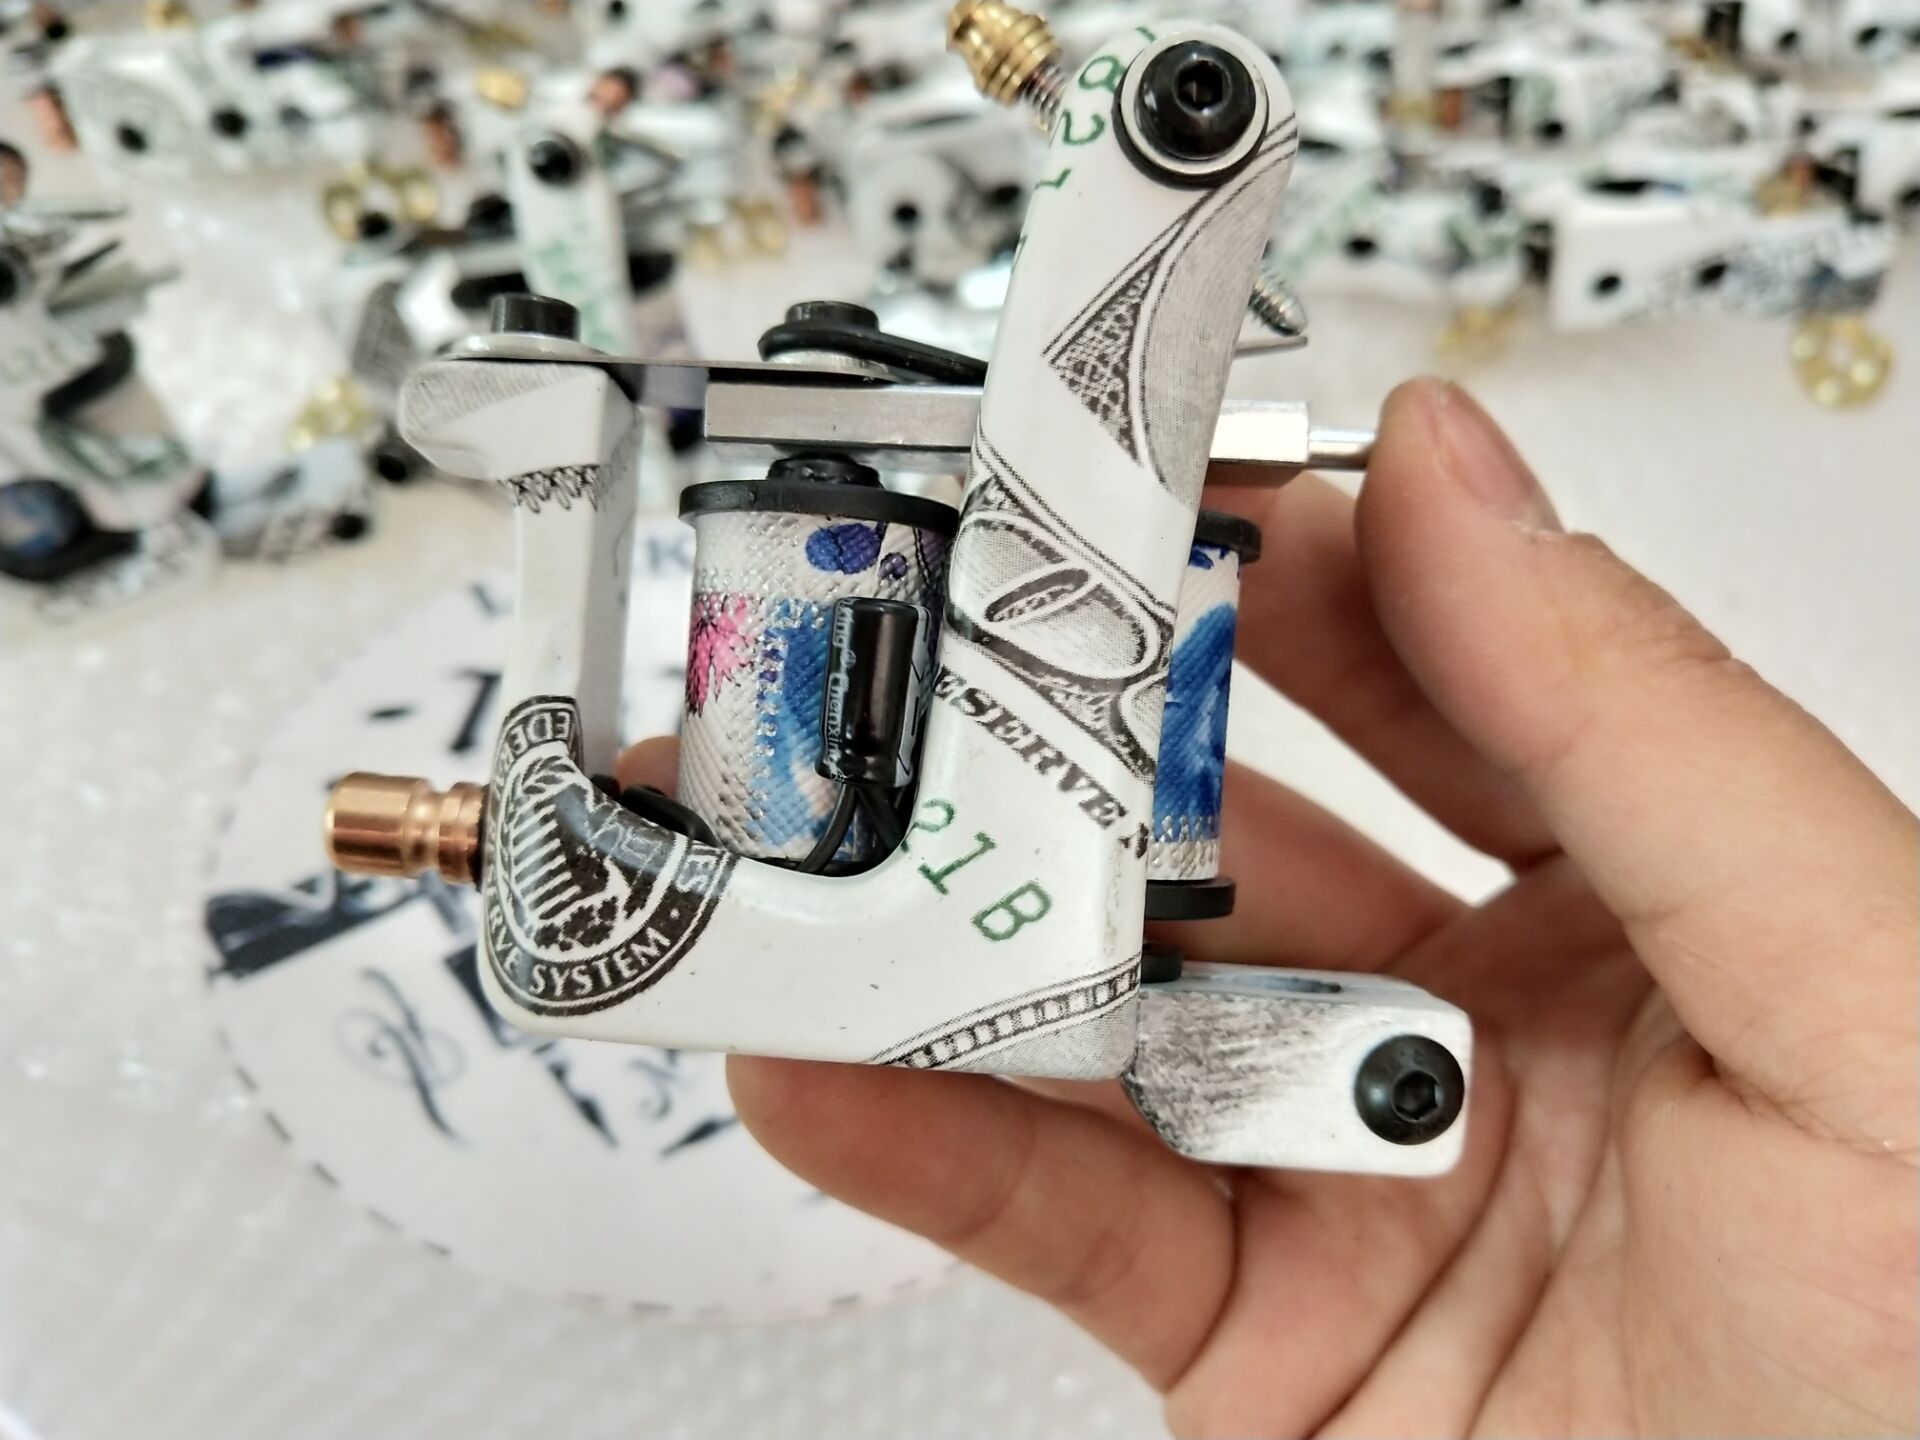 Mummy Rotary Tattoo Machine RCA Connect Powerful Motor Tattoo Gun Liner  Shader | eBay